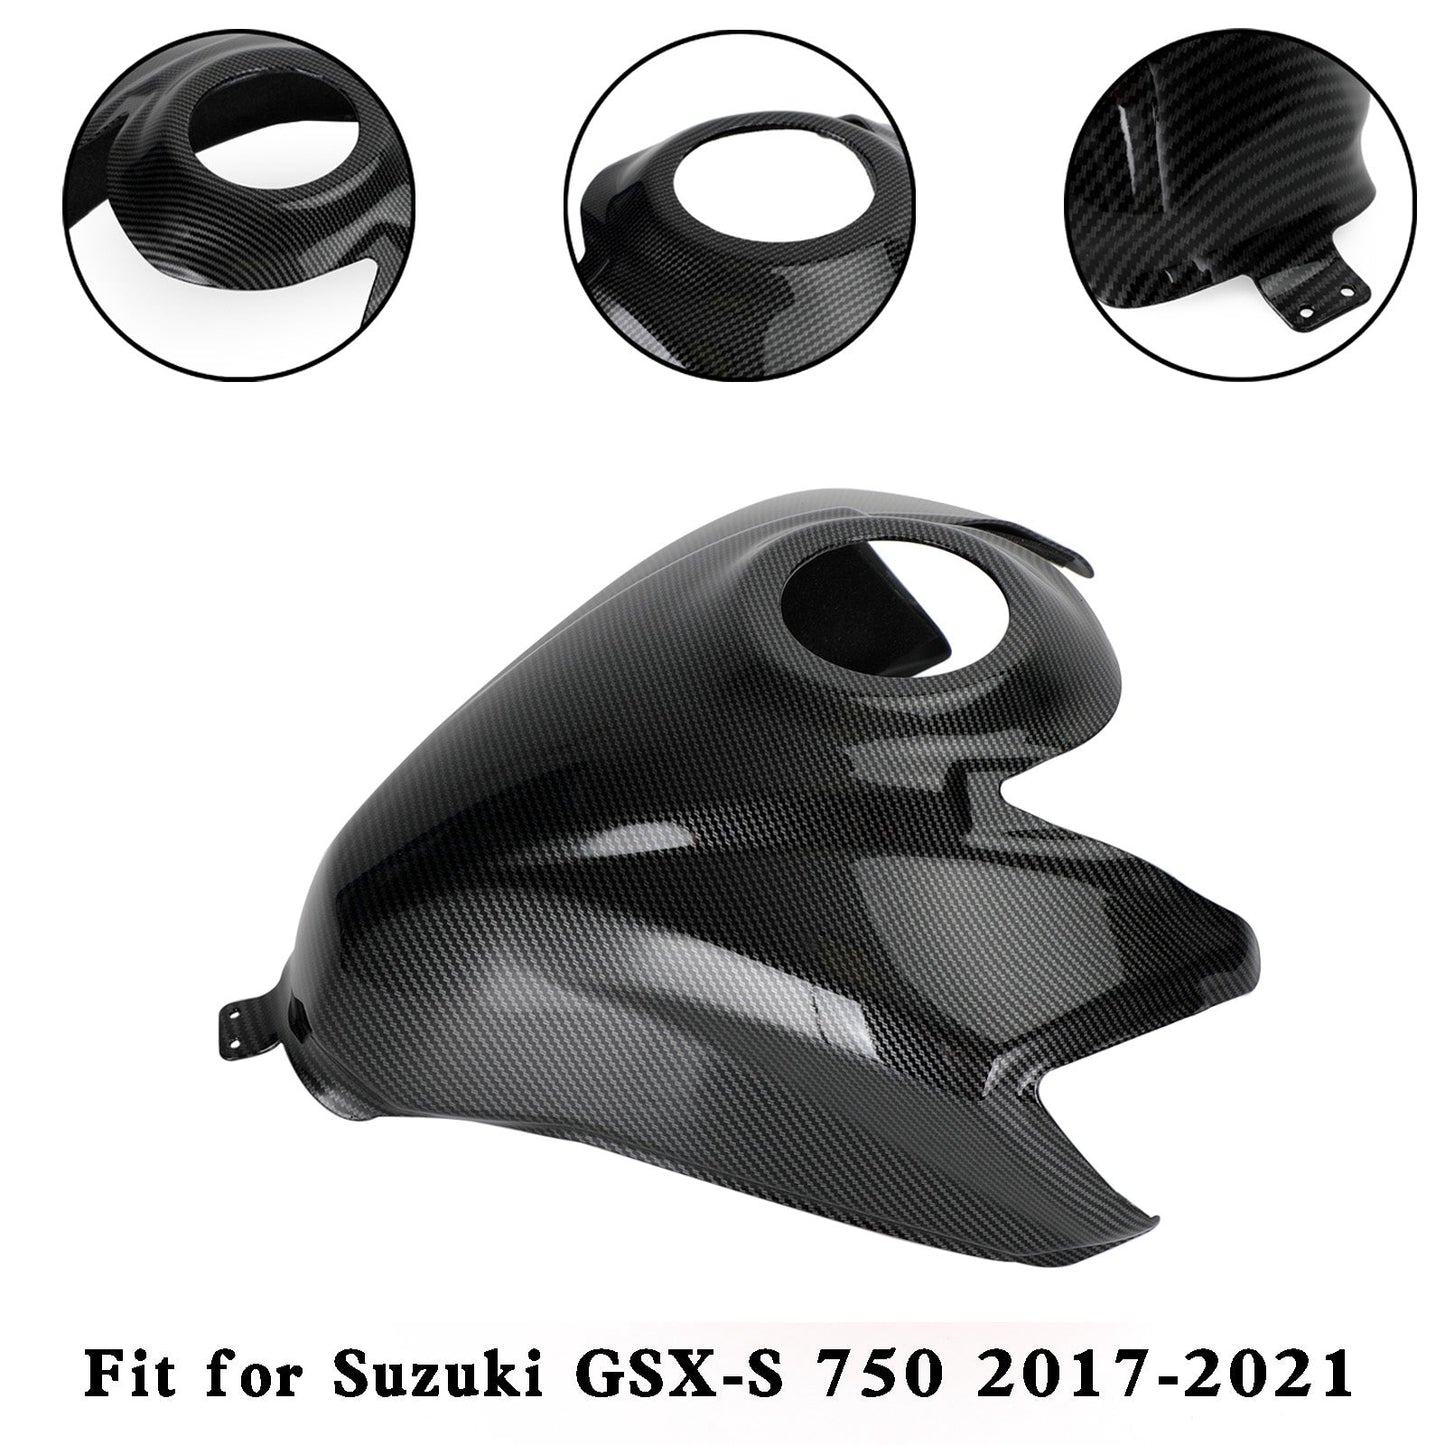 Film protecteur de couvercle de réservoir Suzuki GSX-S 750 GSXS 2017-2021